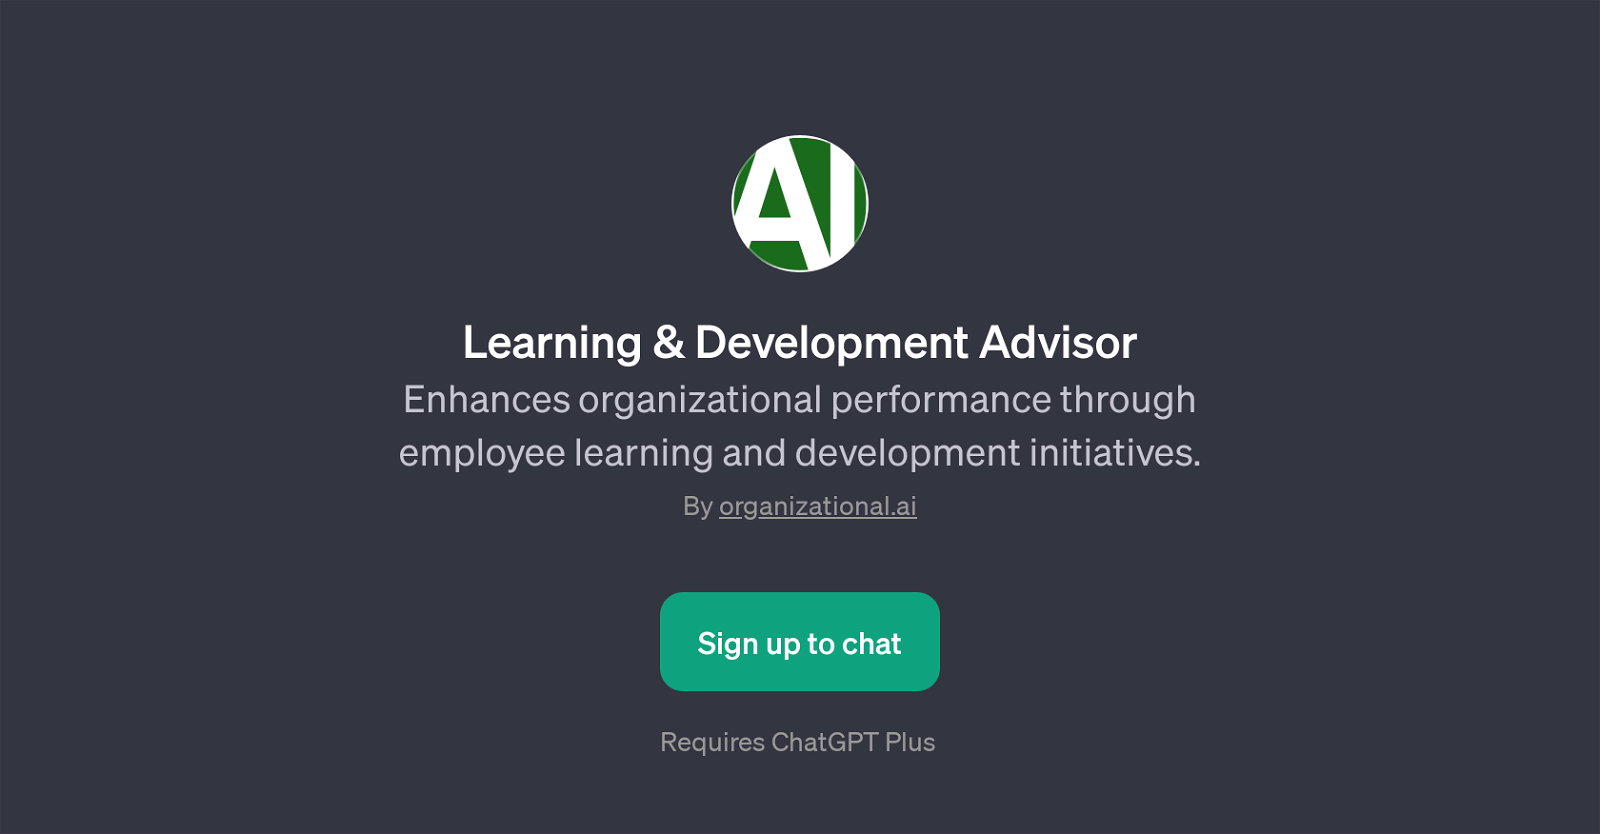 Learning & Development Advisor website